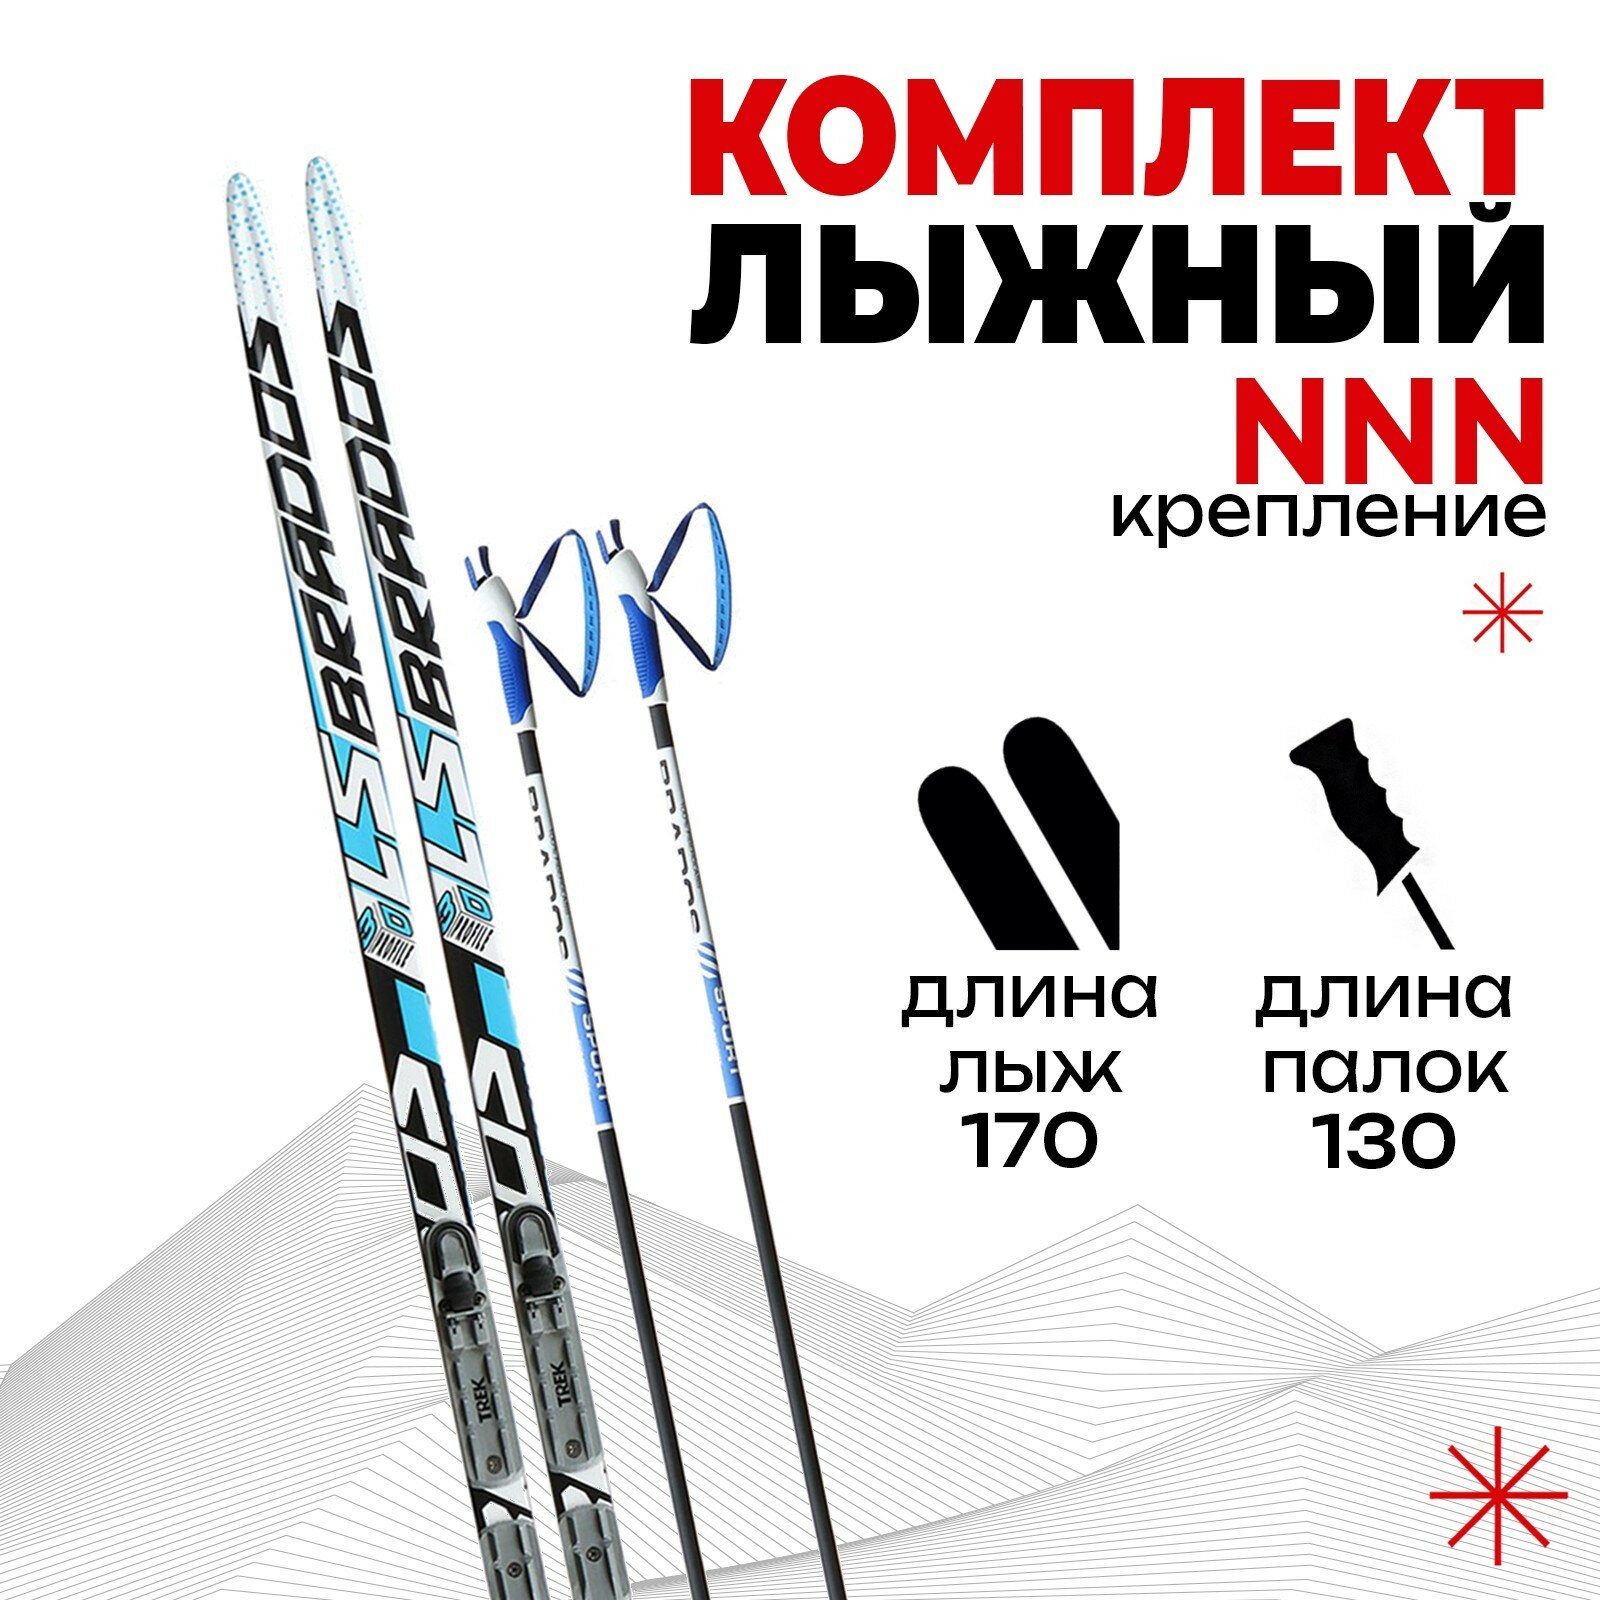 Комплект лыжный: пластиковые лыжи 170 см без насечек стеклопластиковые палки 130 см крепления NNN цвета микс